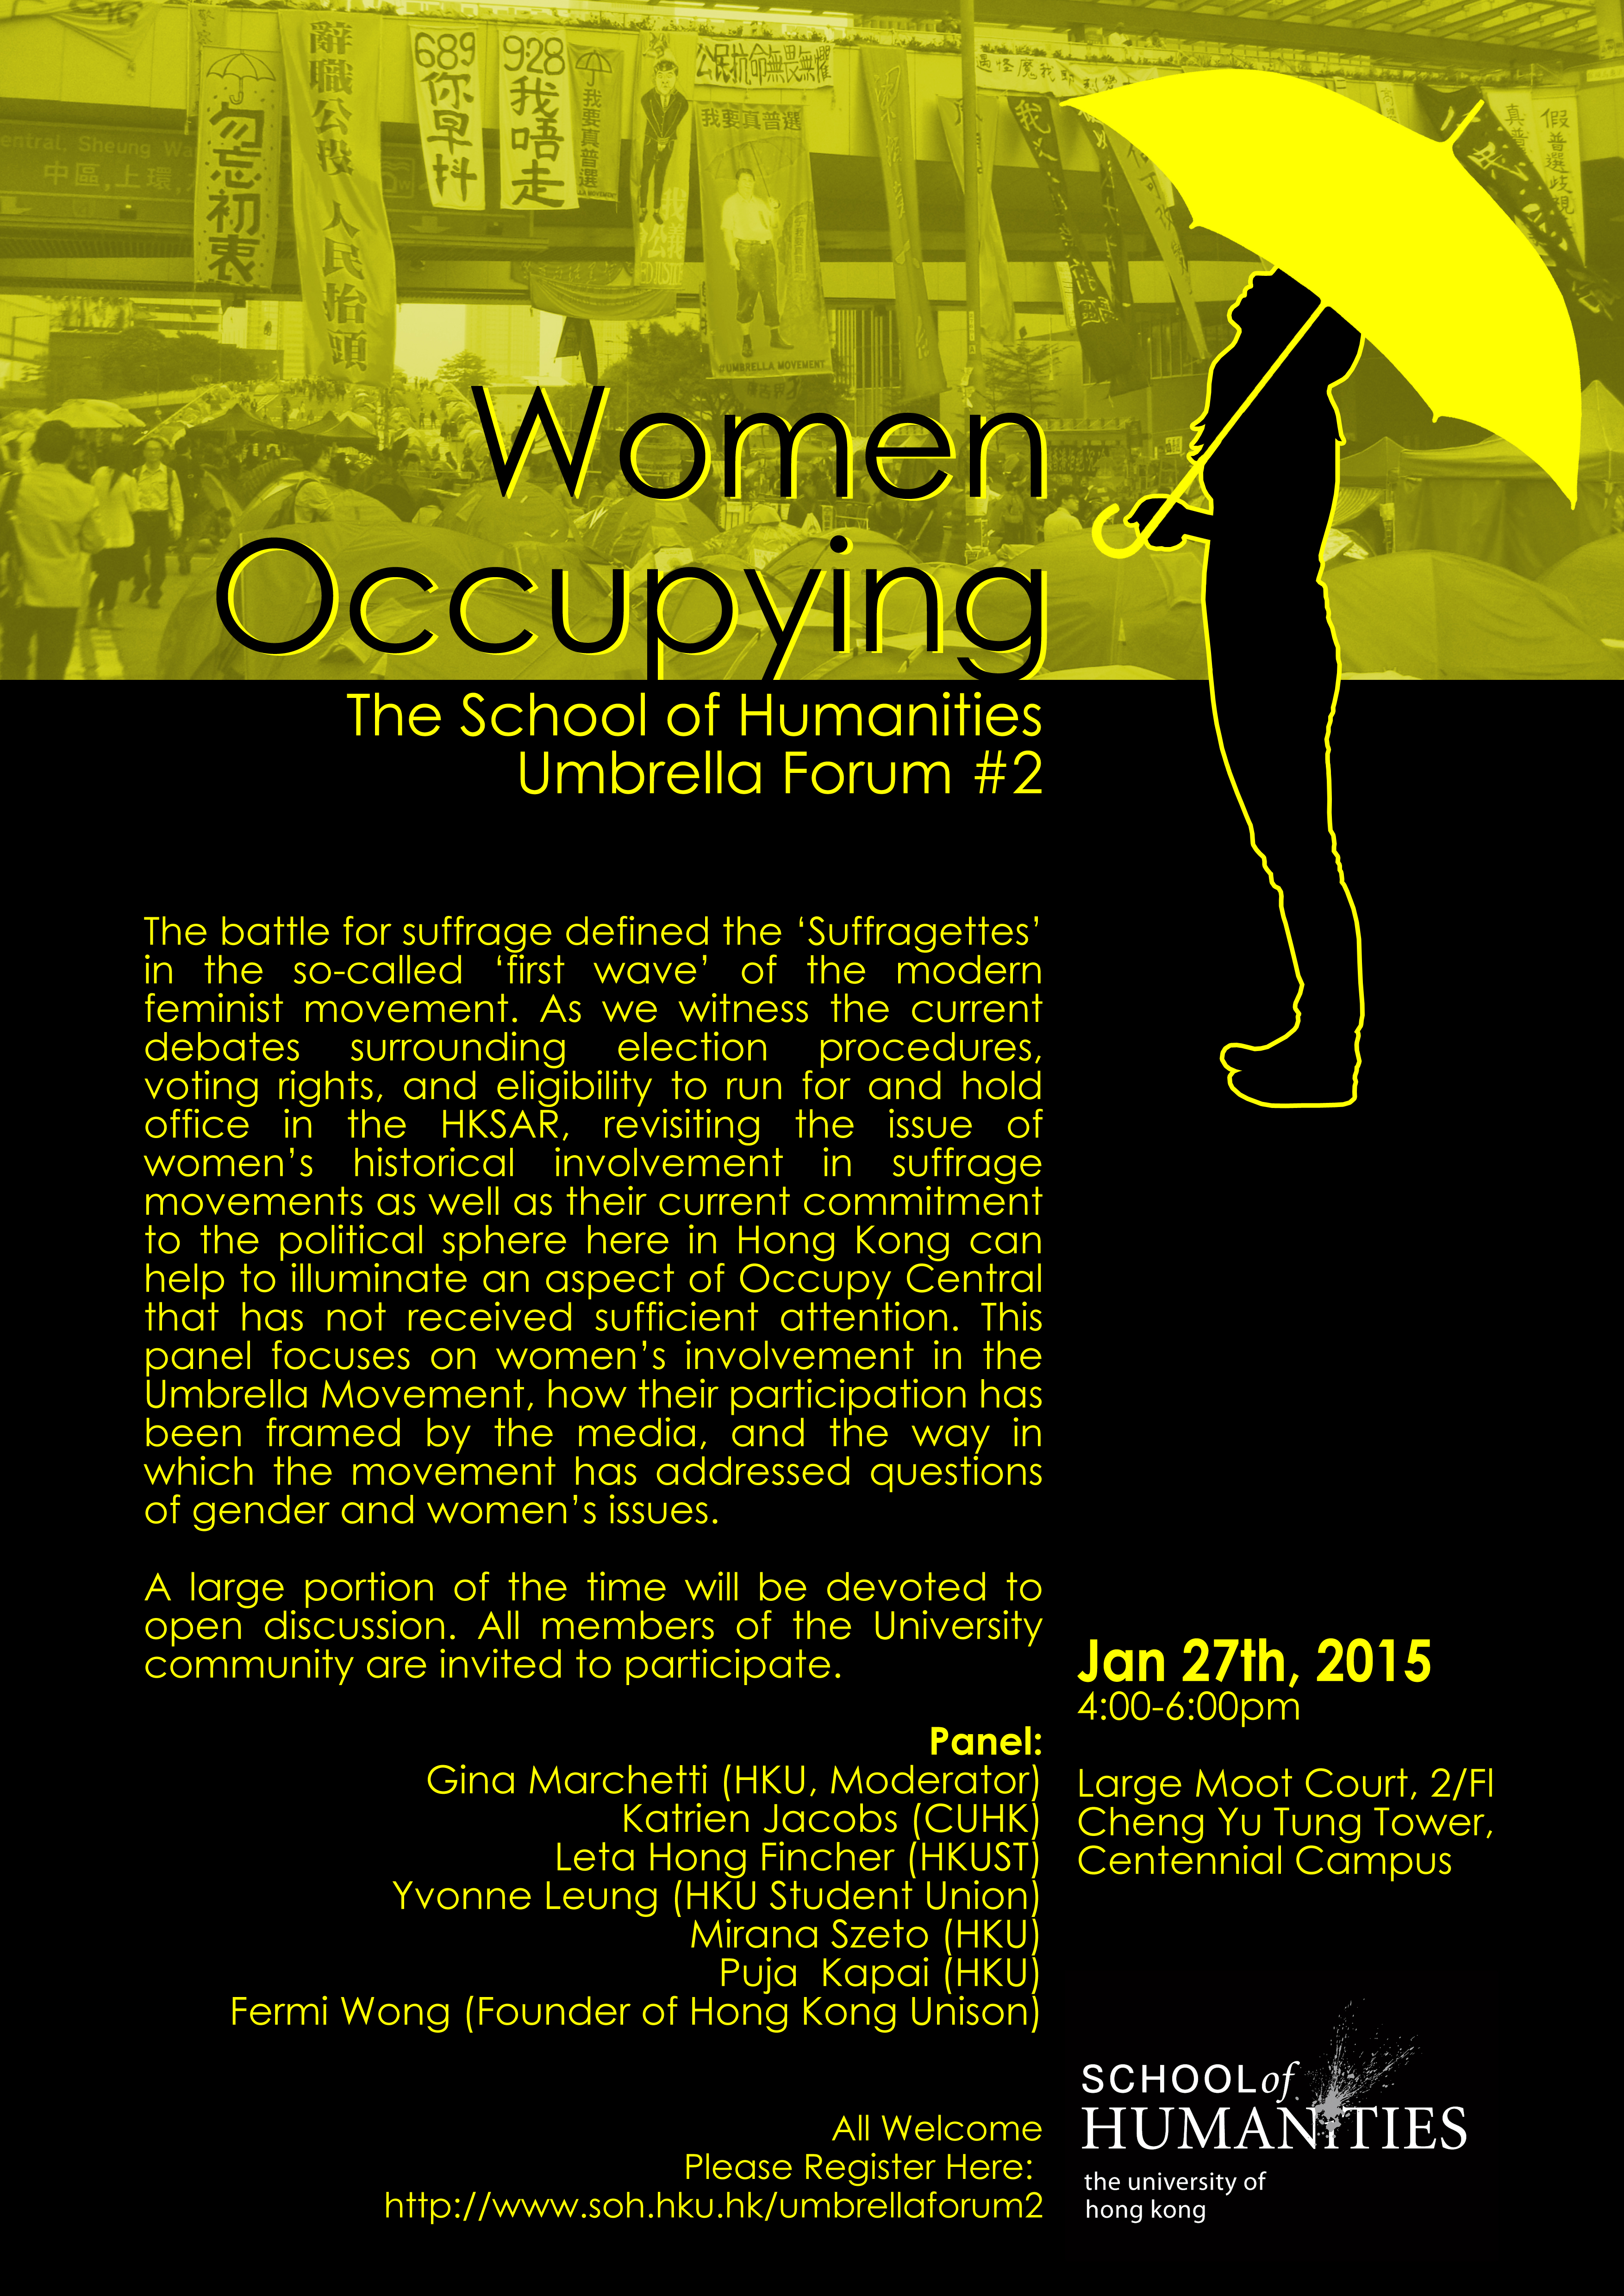 Umbrella Forum #2 - Women Occupying